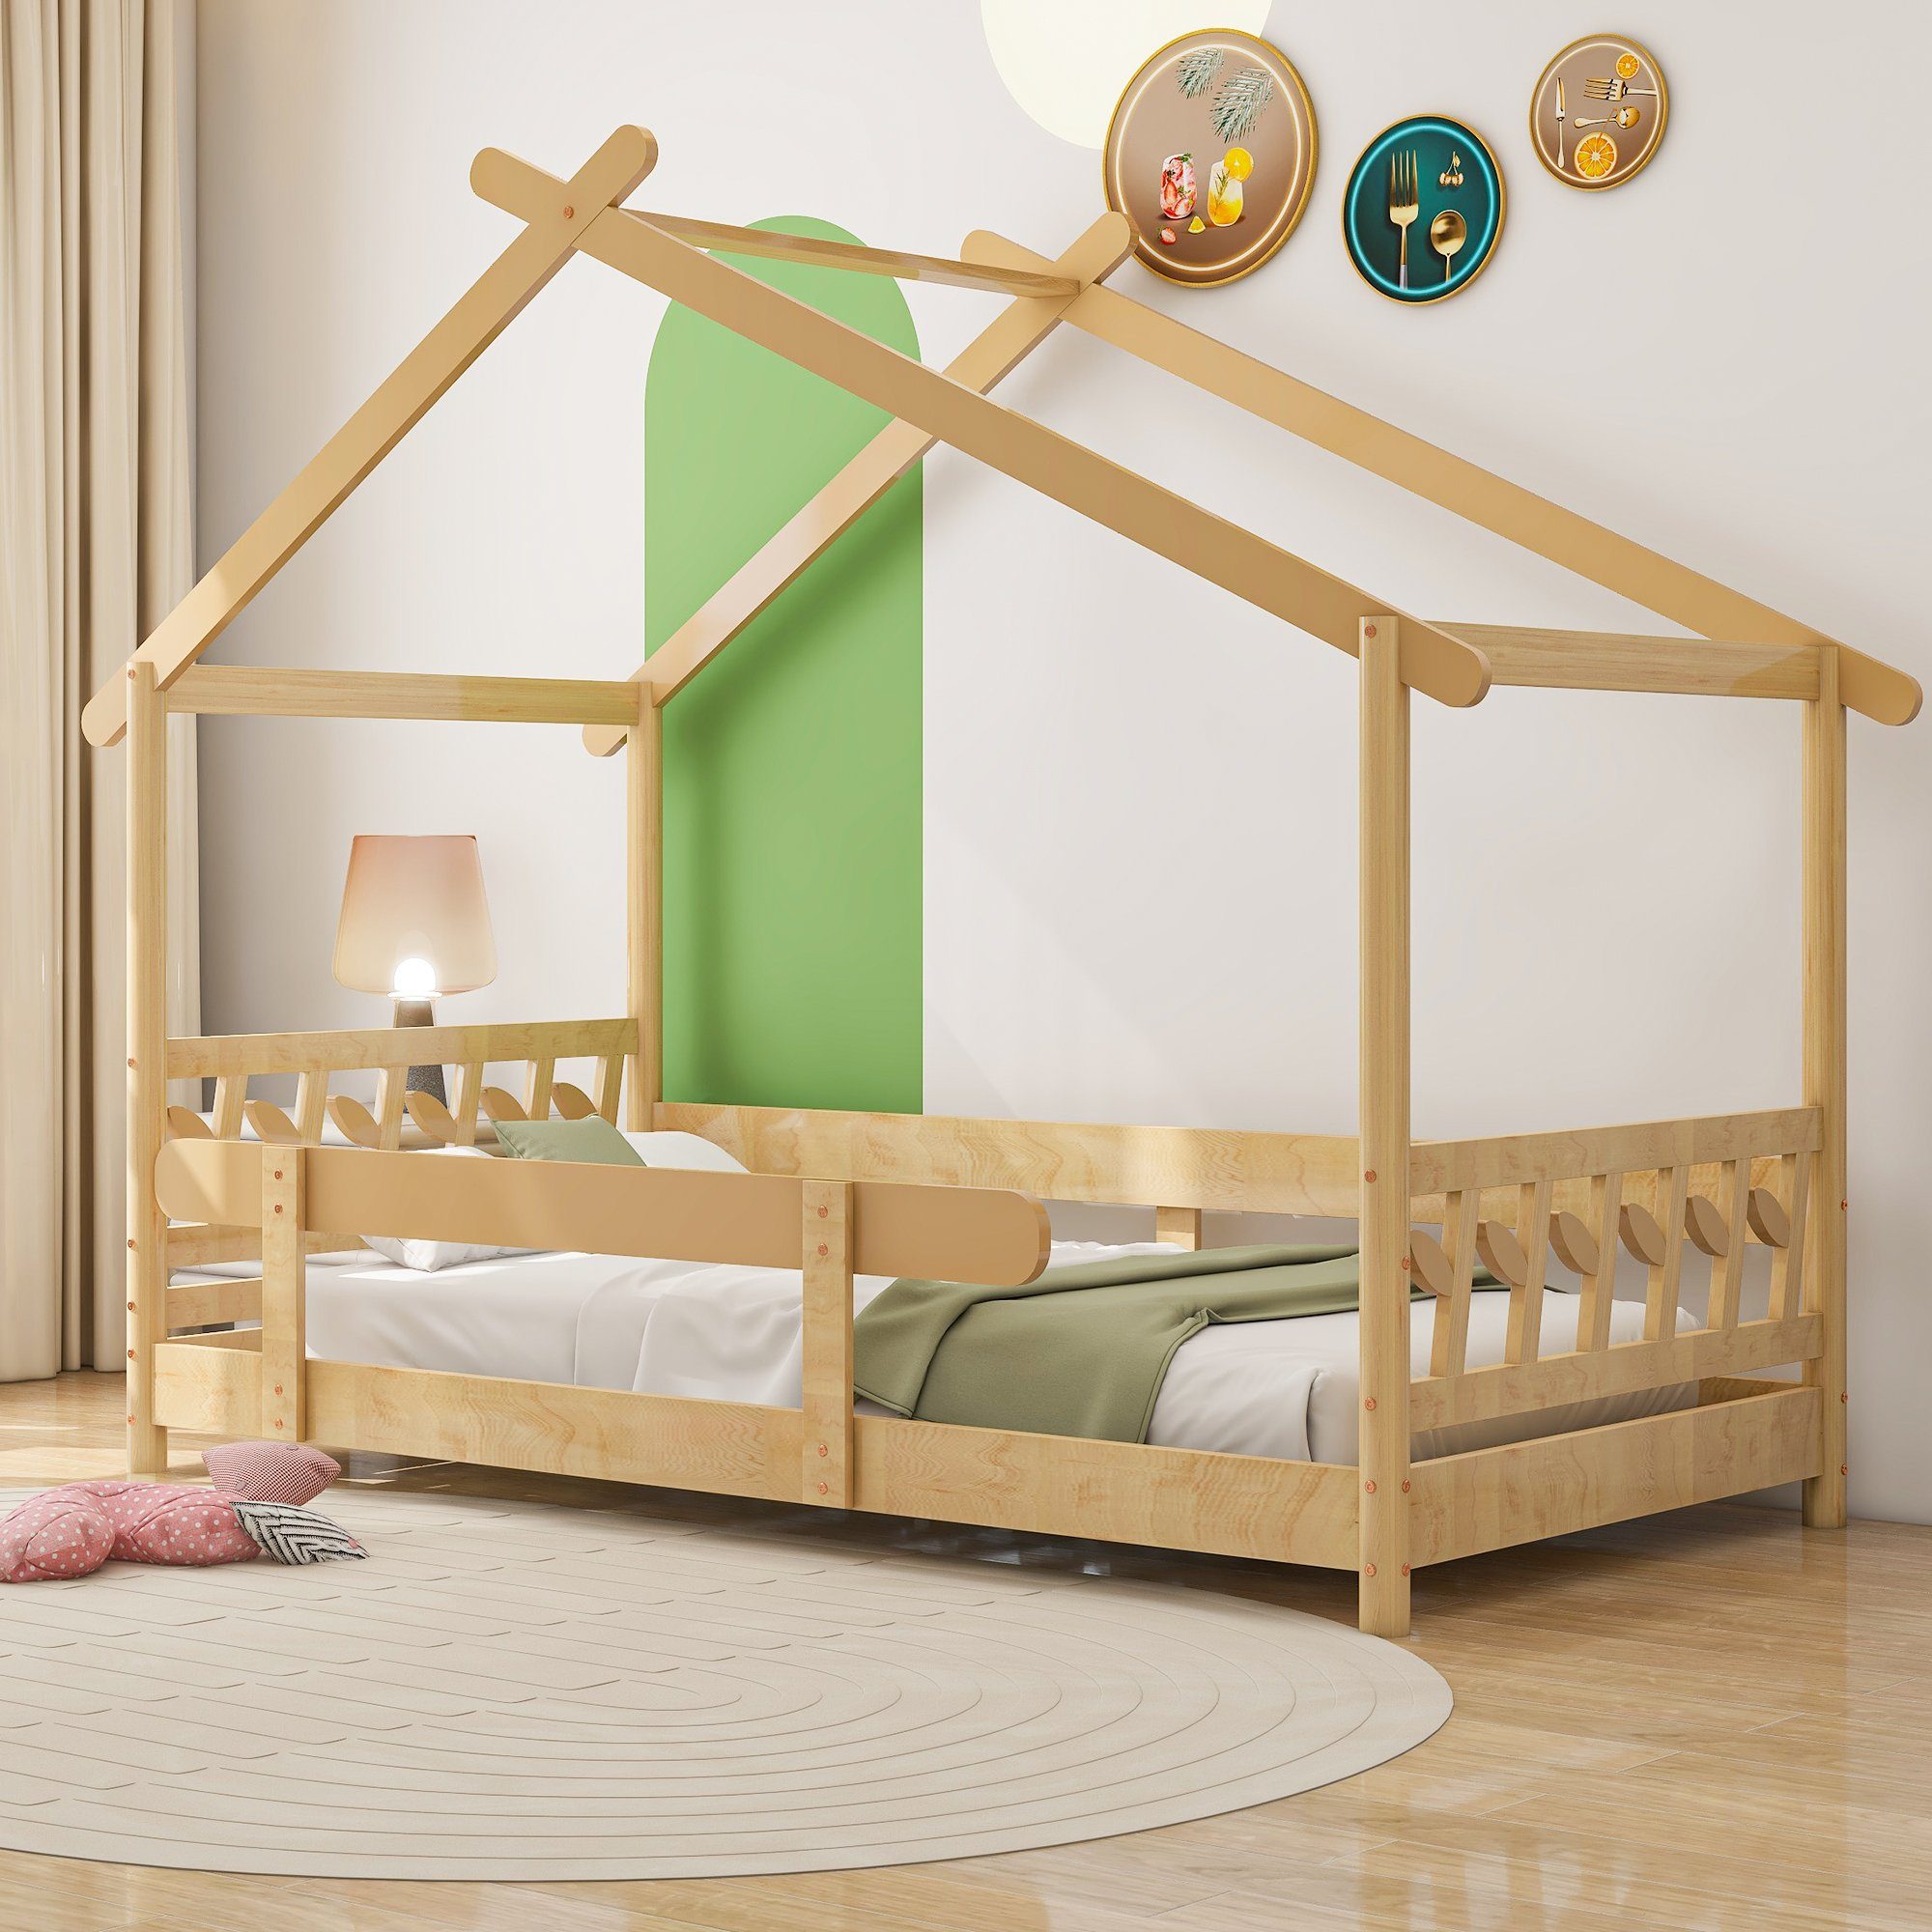 Flieks Kinderbett Dream high, Schönes Hausbett mit Rausfallschutz 90x190cm natur